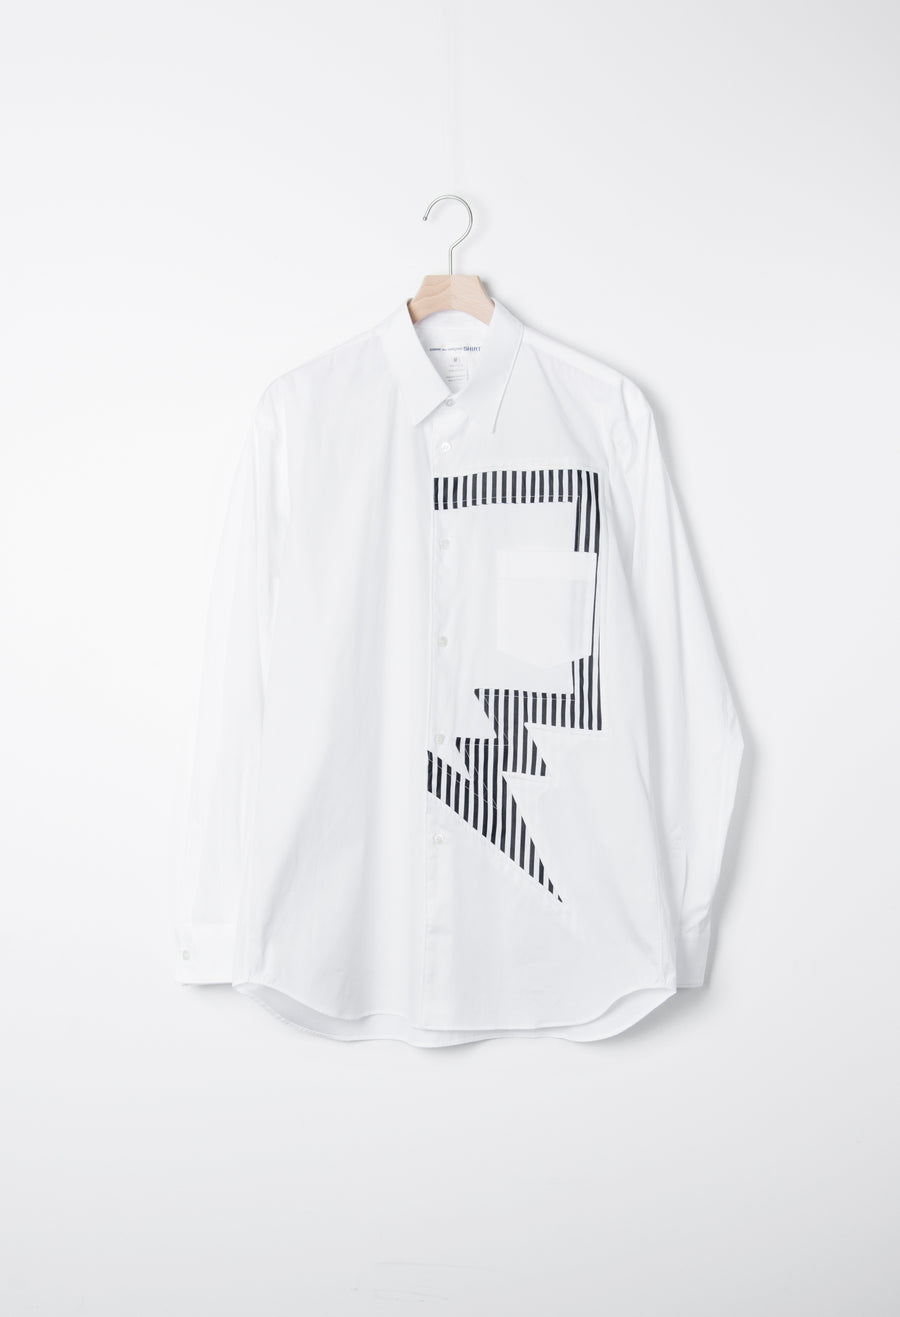 Striped Panel Poplin Shirt White/Stripe B014